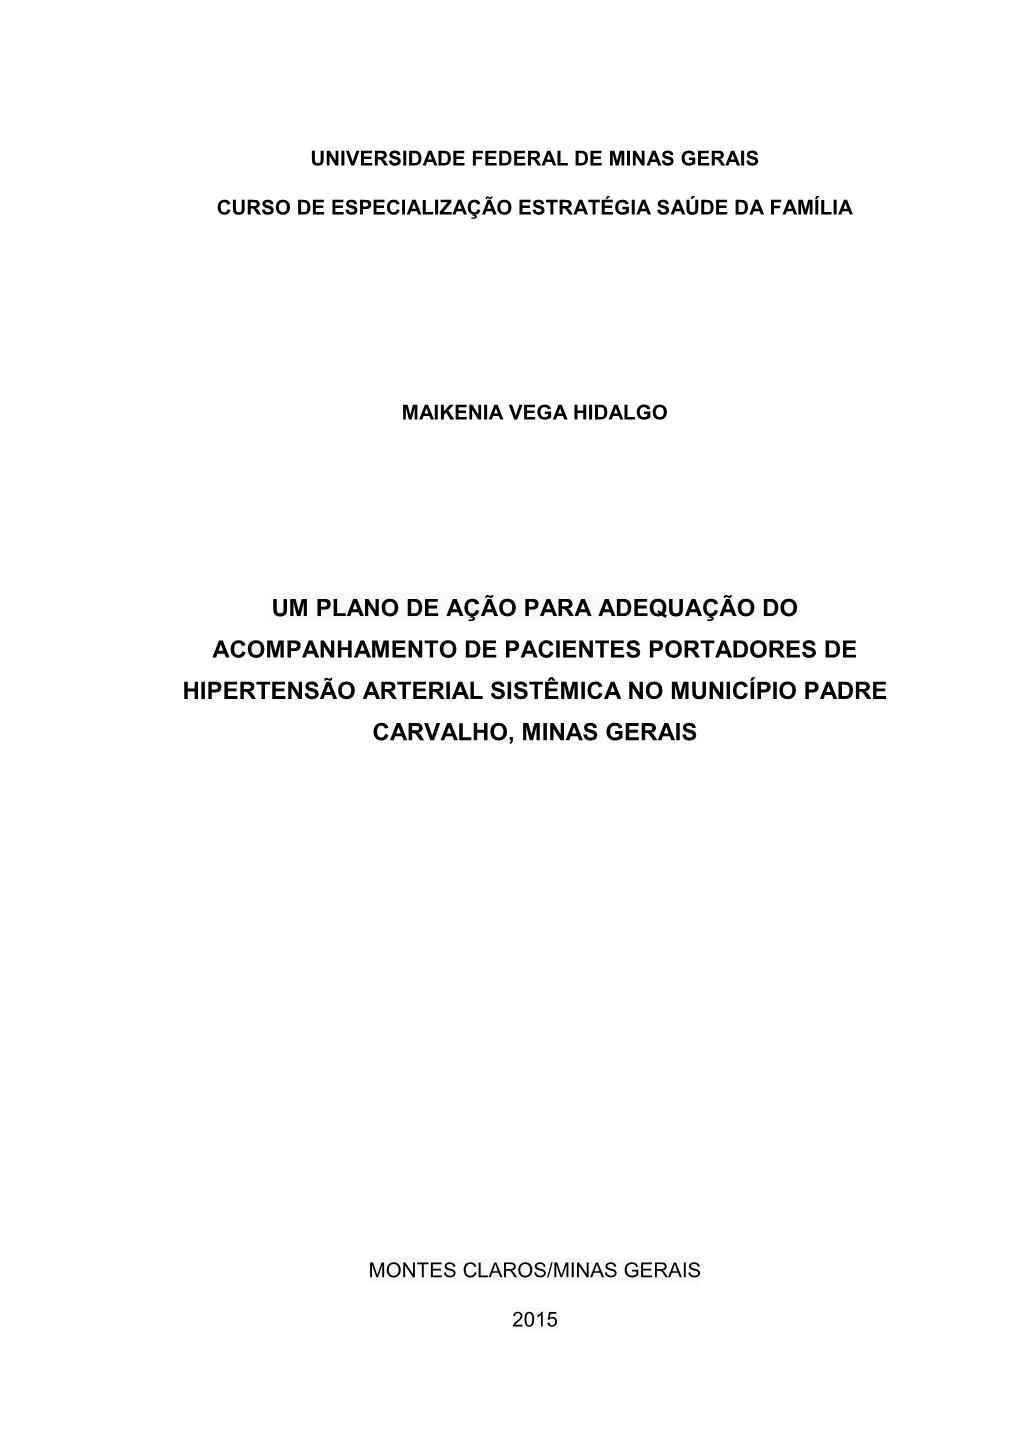 Um Plano De Ação Para Adequação Do Acompanhamento De Pacientes Portadores De Hipertensão Arterial Sistêmica No Município Padre Carvalho, Minas Gerais